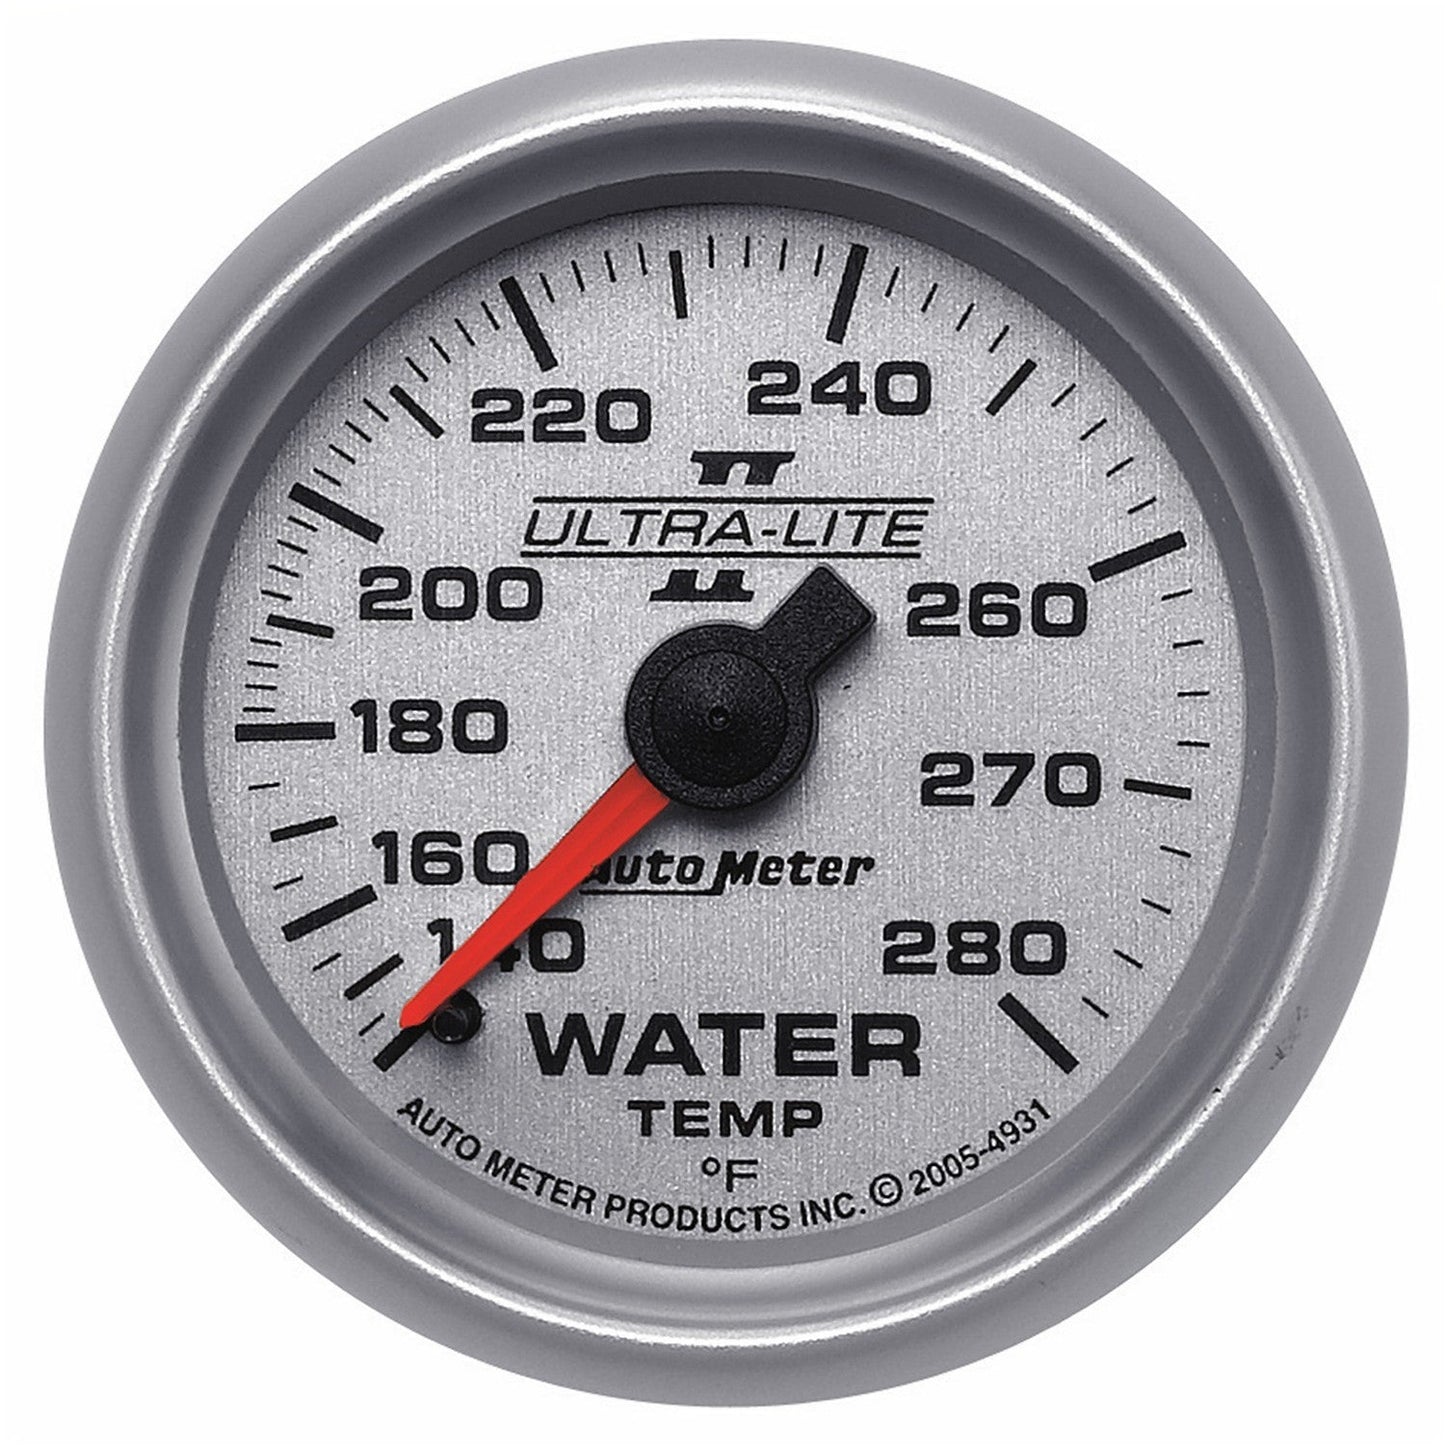 AutoMeter - 2-1/16" TEMPERATURA DA ÁGUA, 140-280 °F, 6 FT., MECÂNICO, ULTRA-LITE II (4931) 